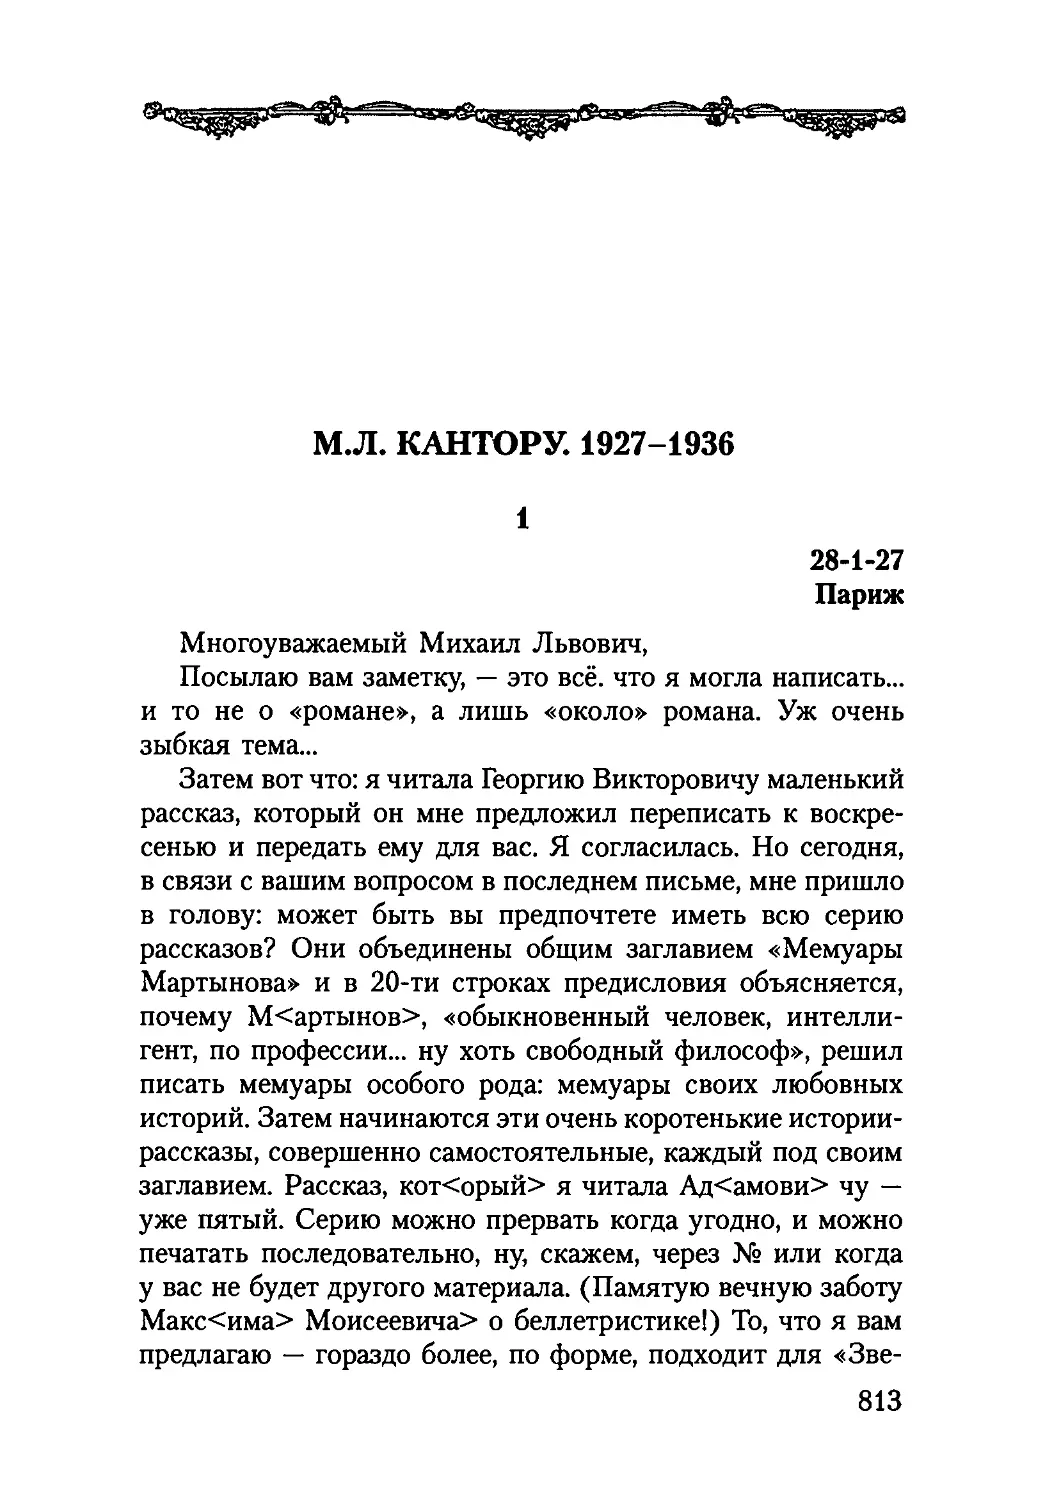 М. Л. КАНТОРУ. 1927-1936